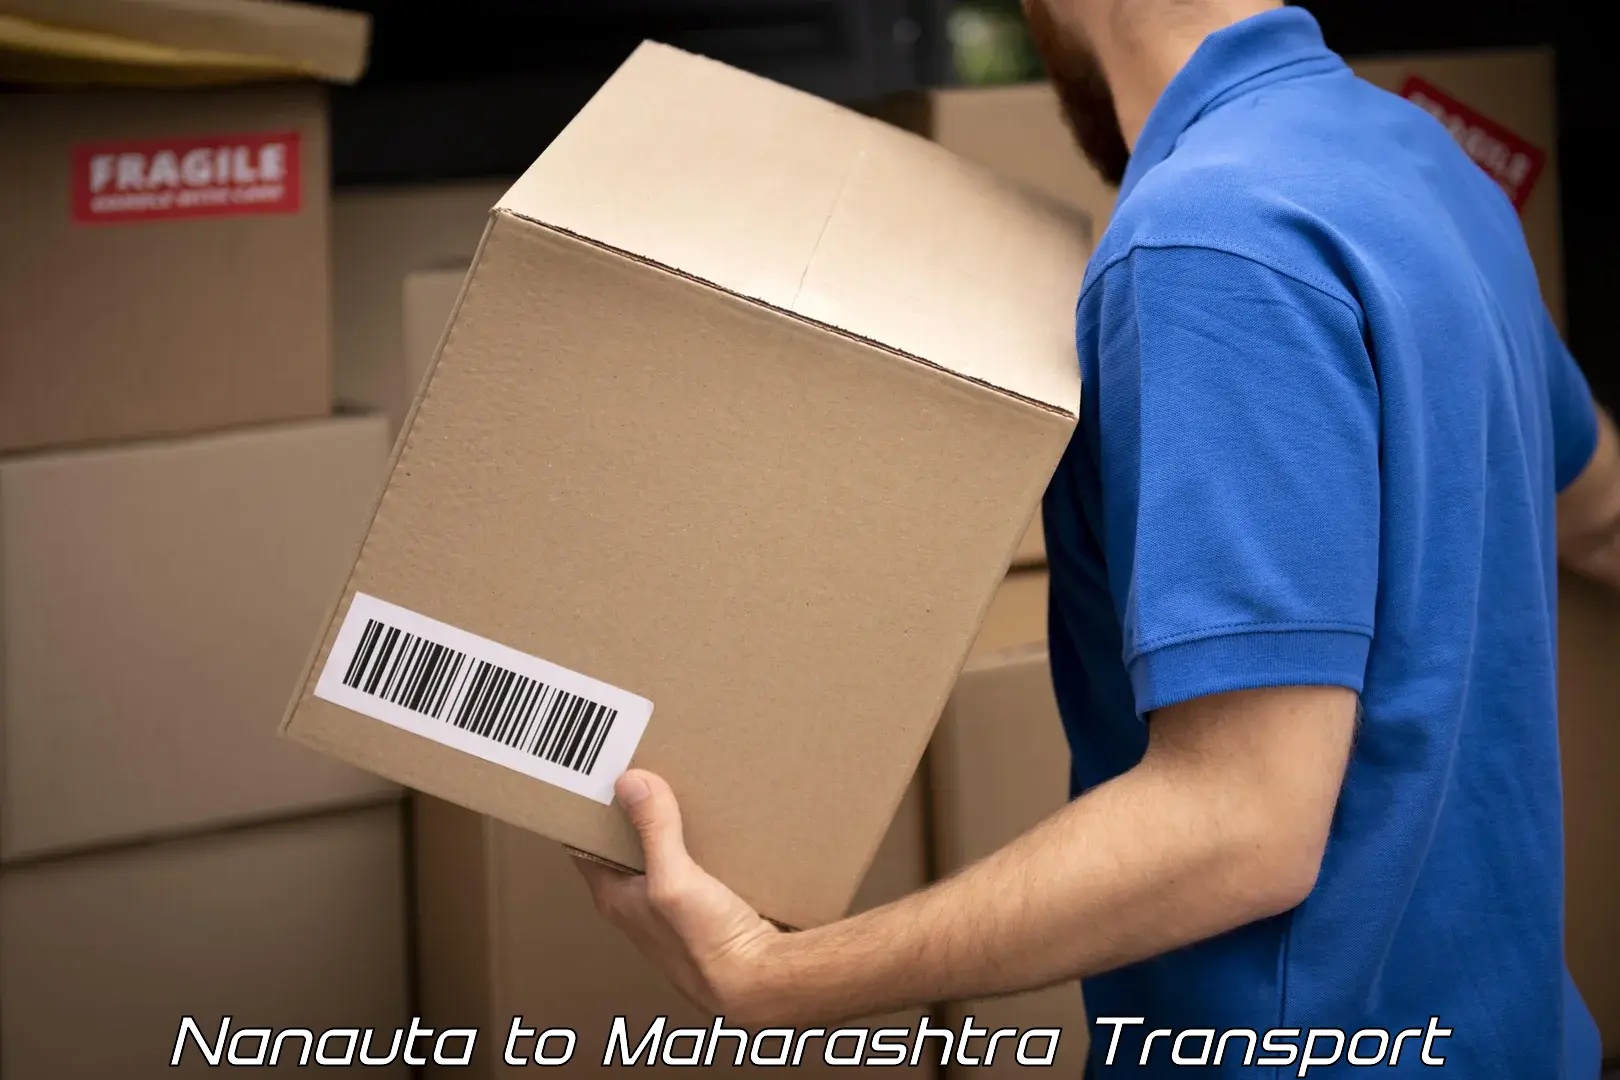 Road transport online services Nanauta to Maharashtra